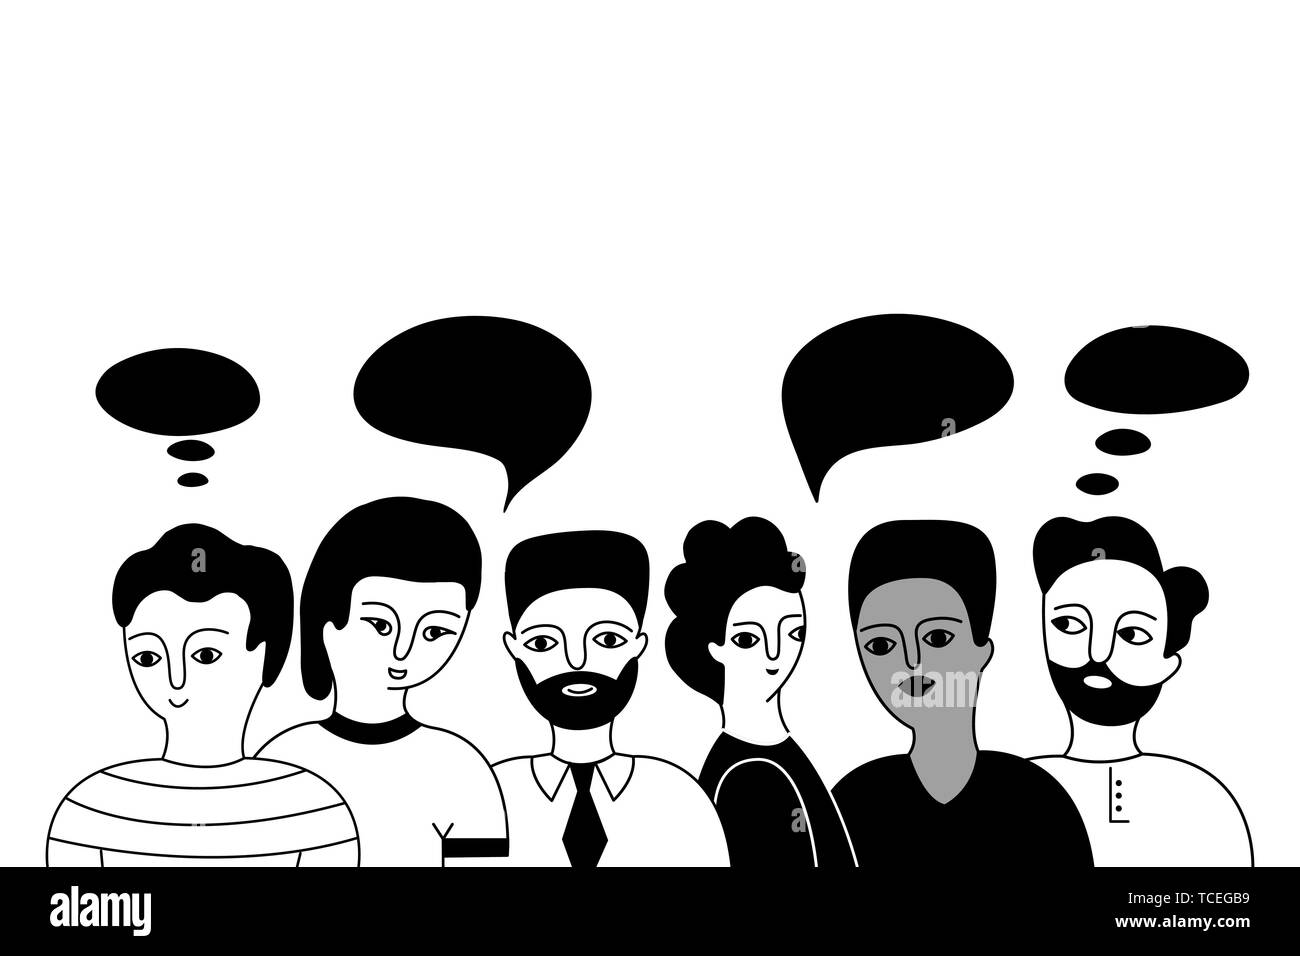 Multikulturelle Gruppe von Männern (Muslim, Asiatischen, Europäischen, Hindu) auf einem weißen Hintergrund. Soziale Vielfalt. Doodle cartoon Vector Illustration. Stock Vektor